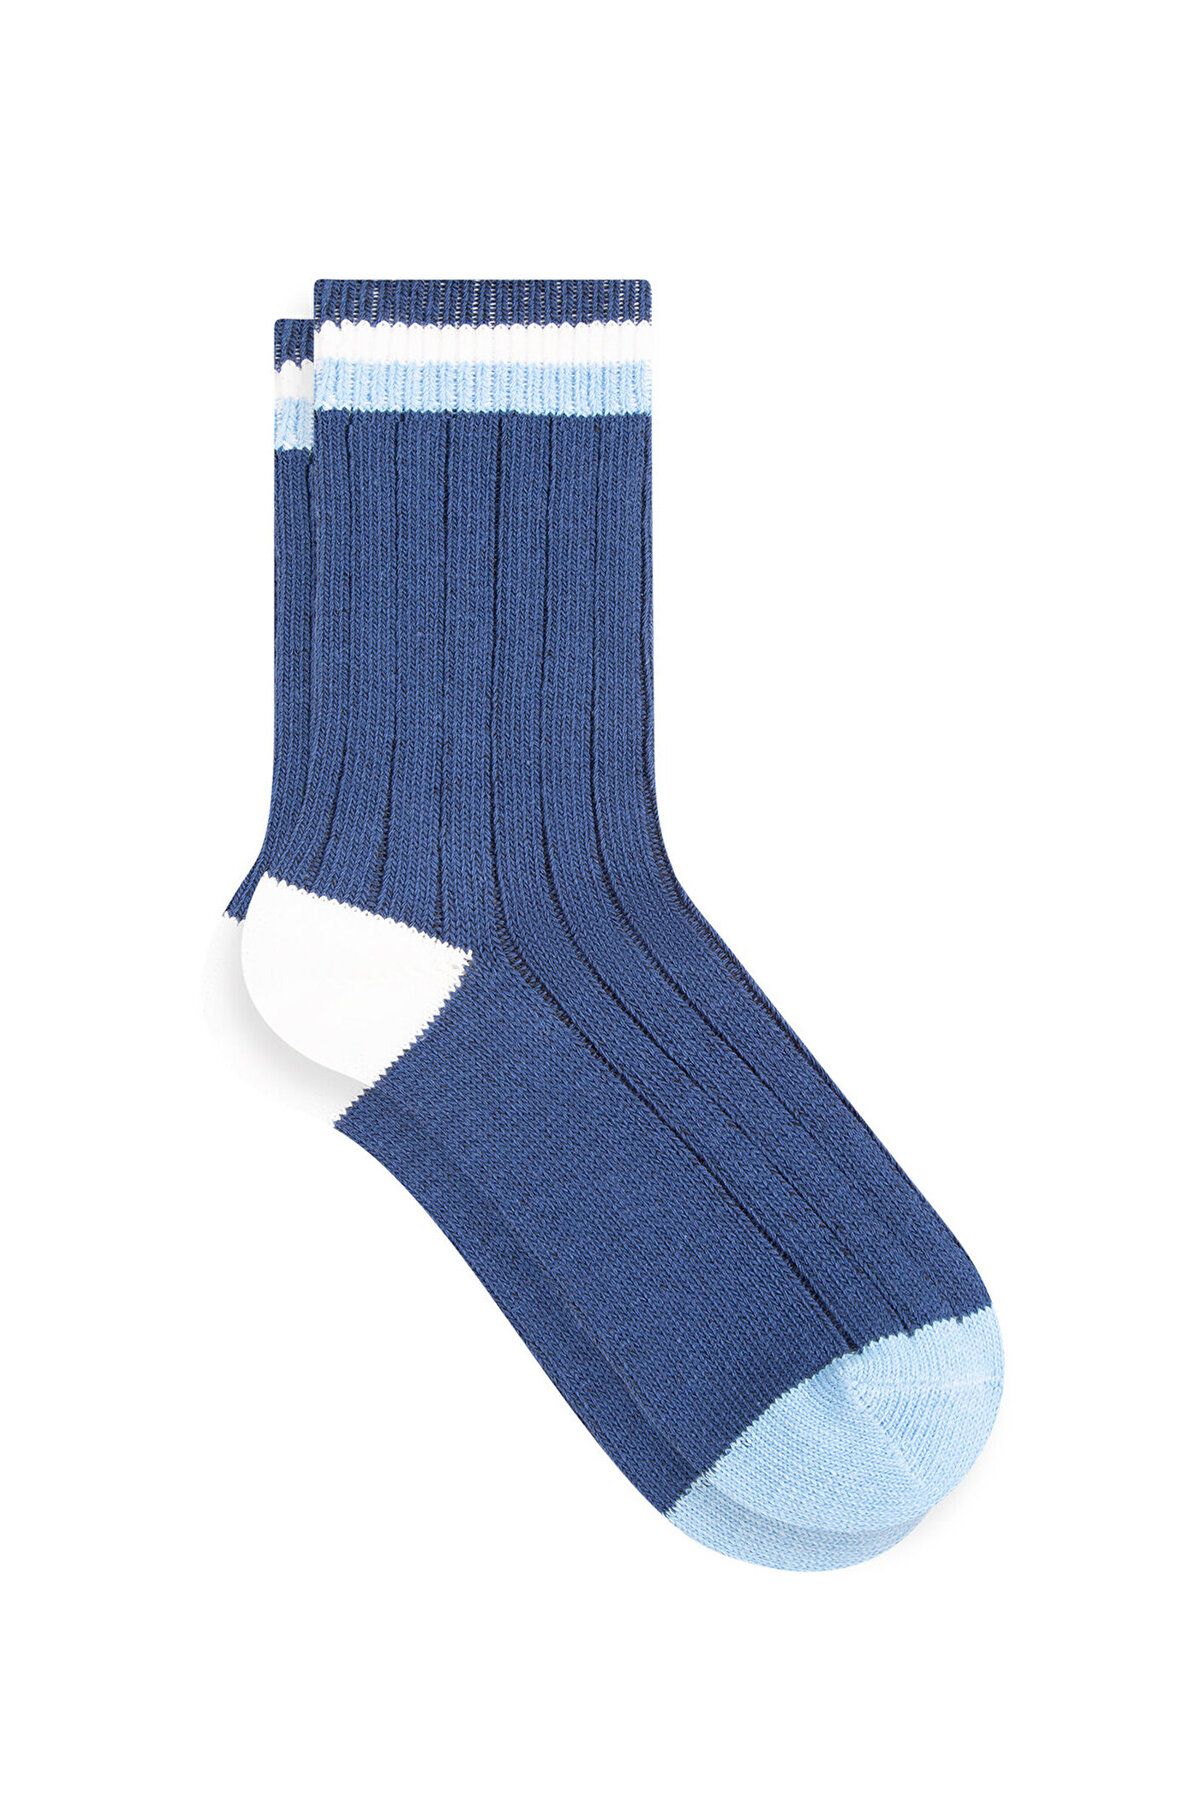 Mavi Lacivert Bot Çorabı 1910913-30717